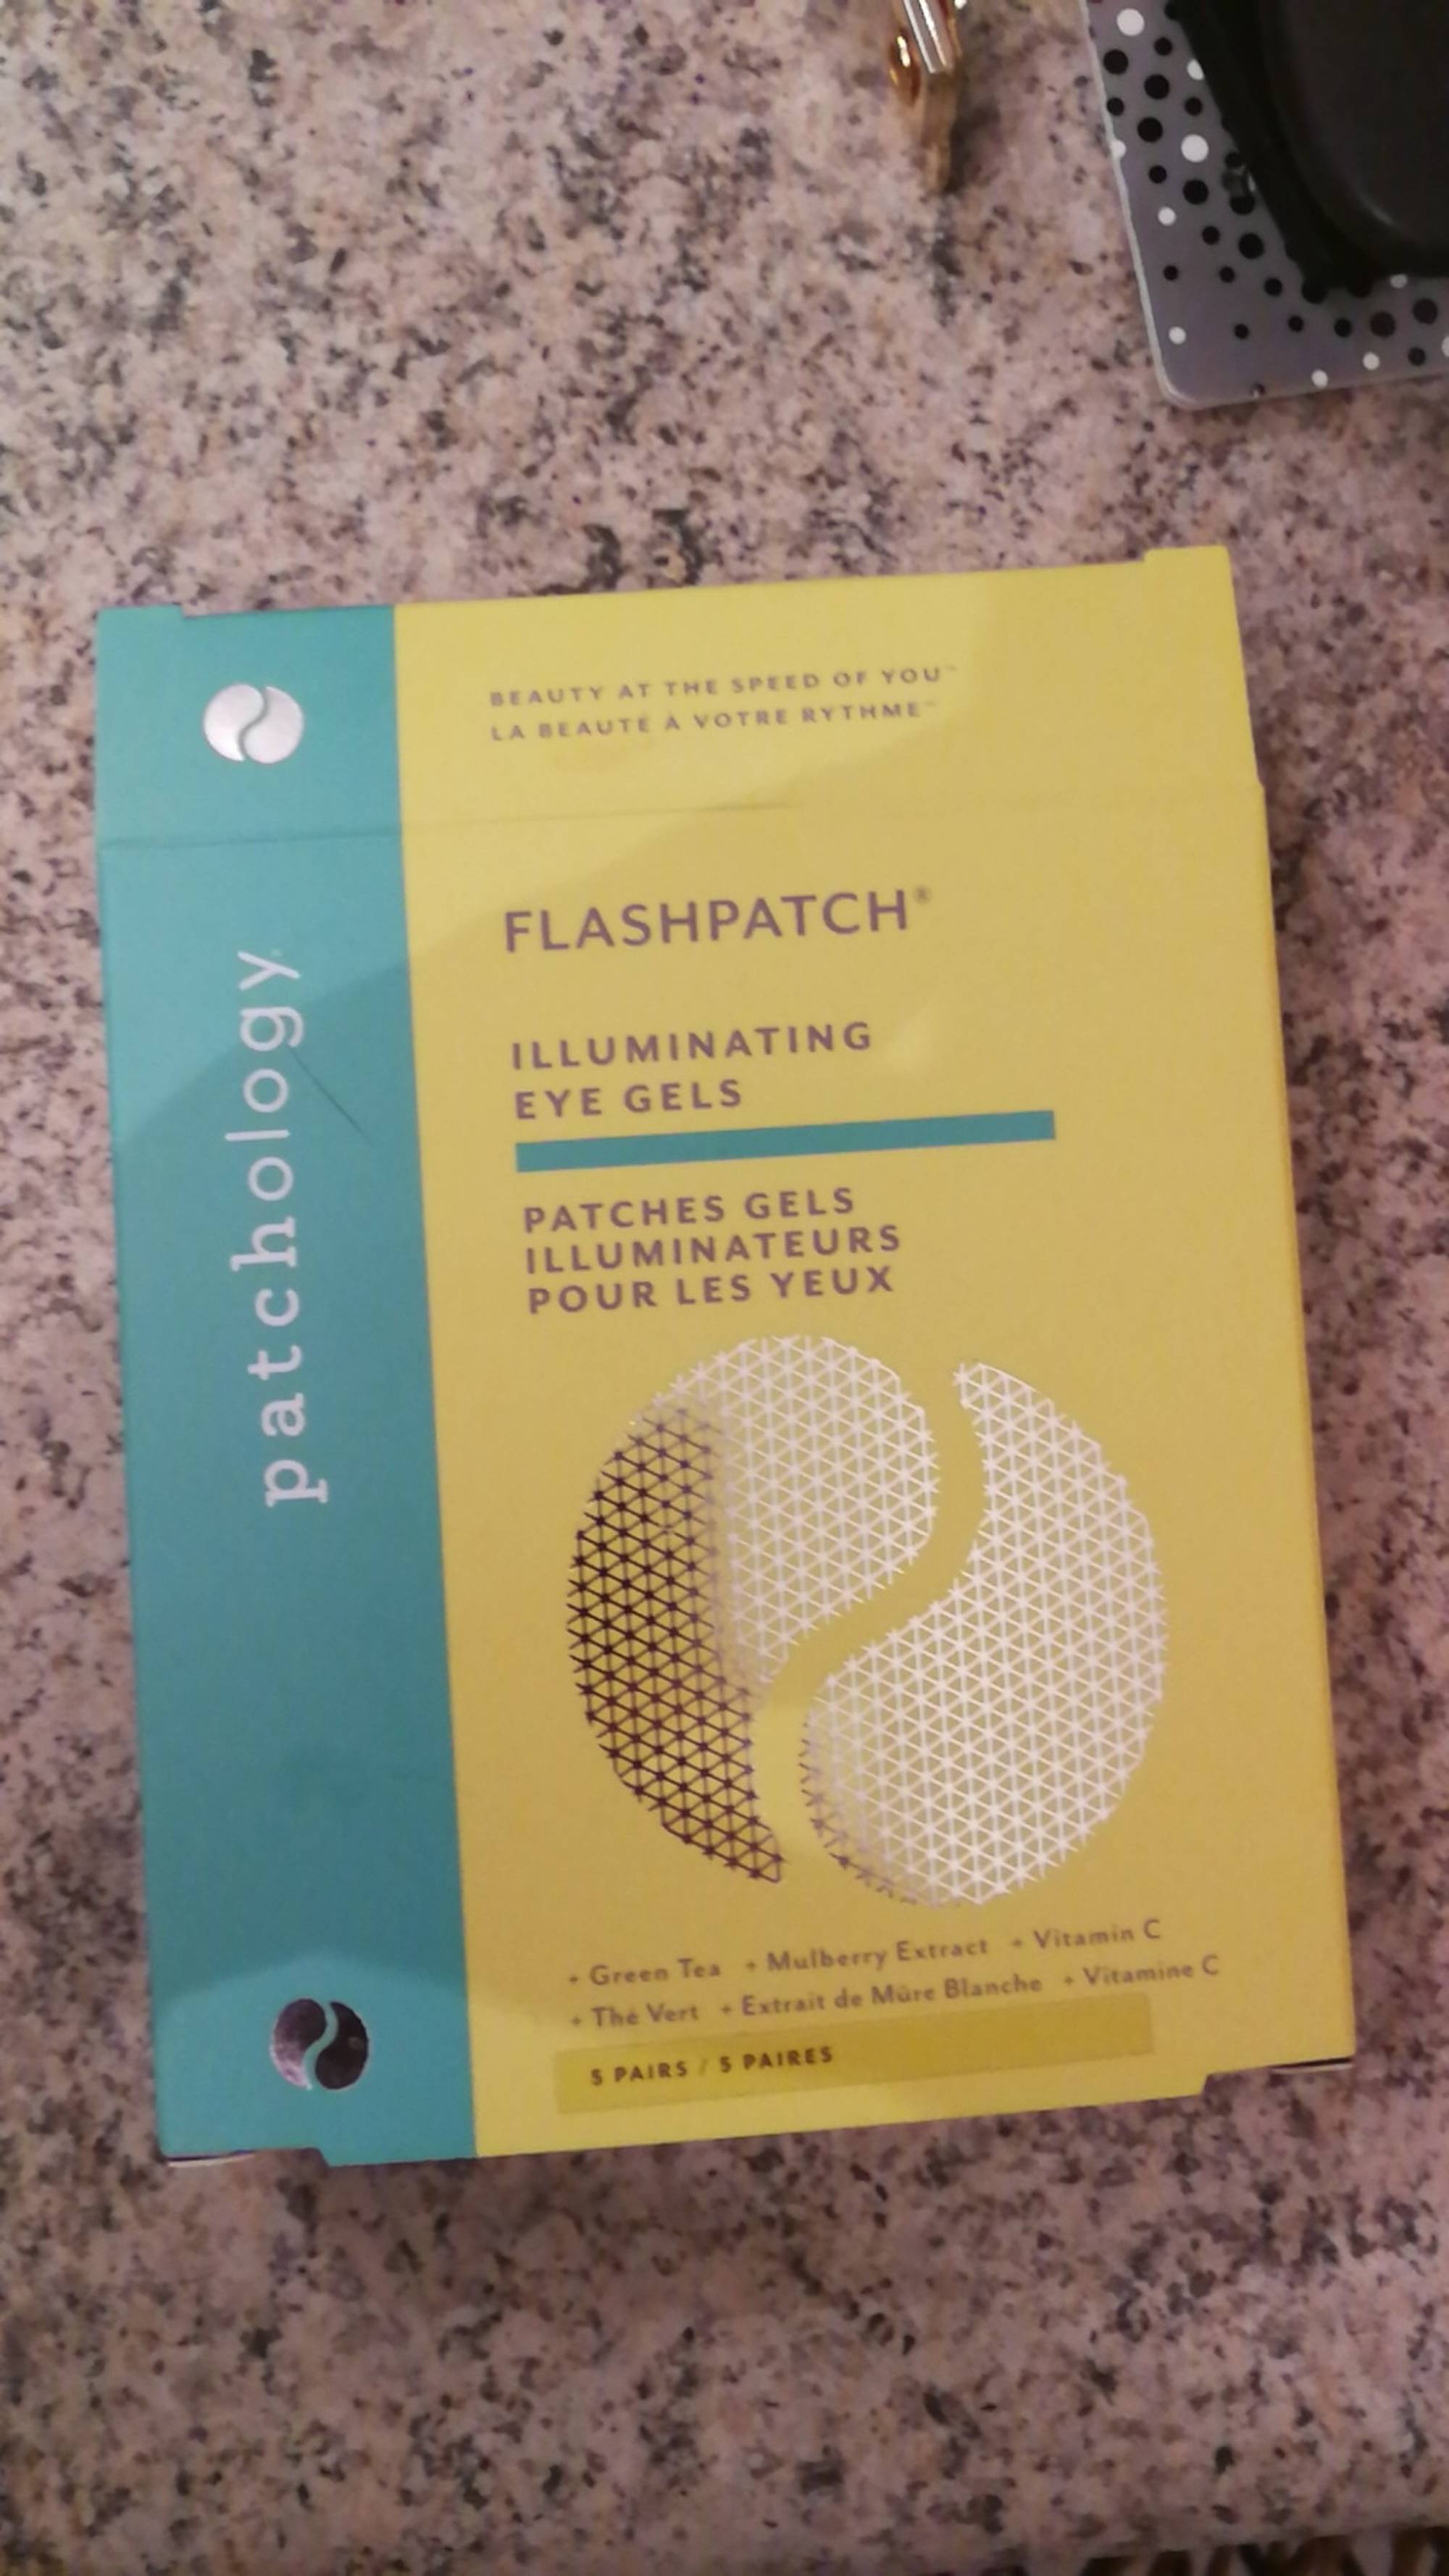 PATCHOLOGY - Flashpatch - Patches gels illuminateurs pour les yeux